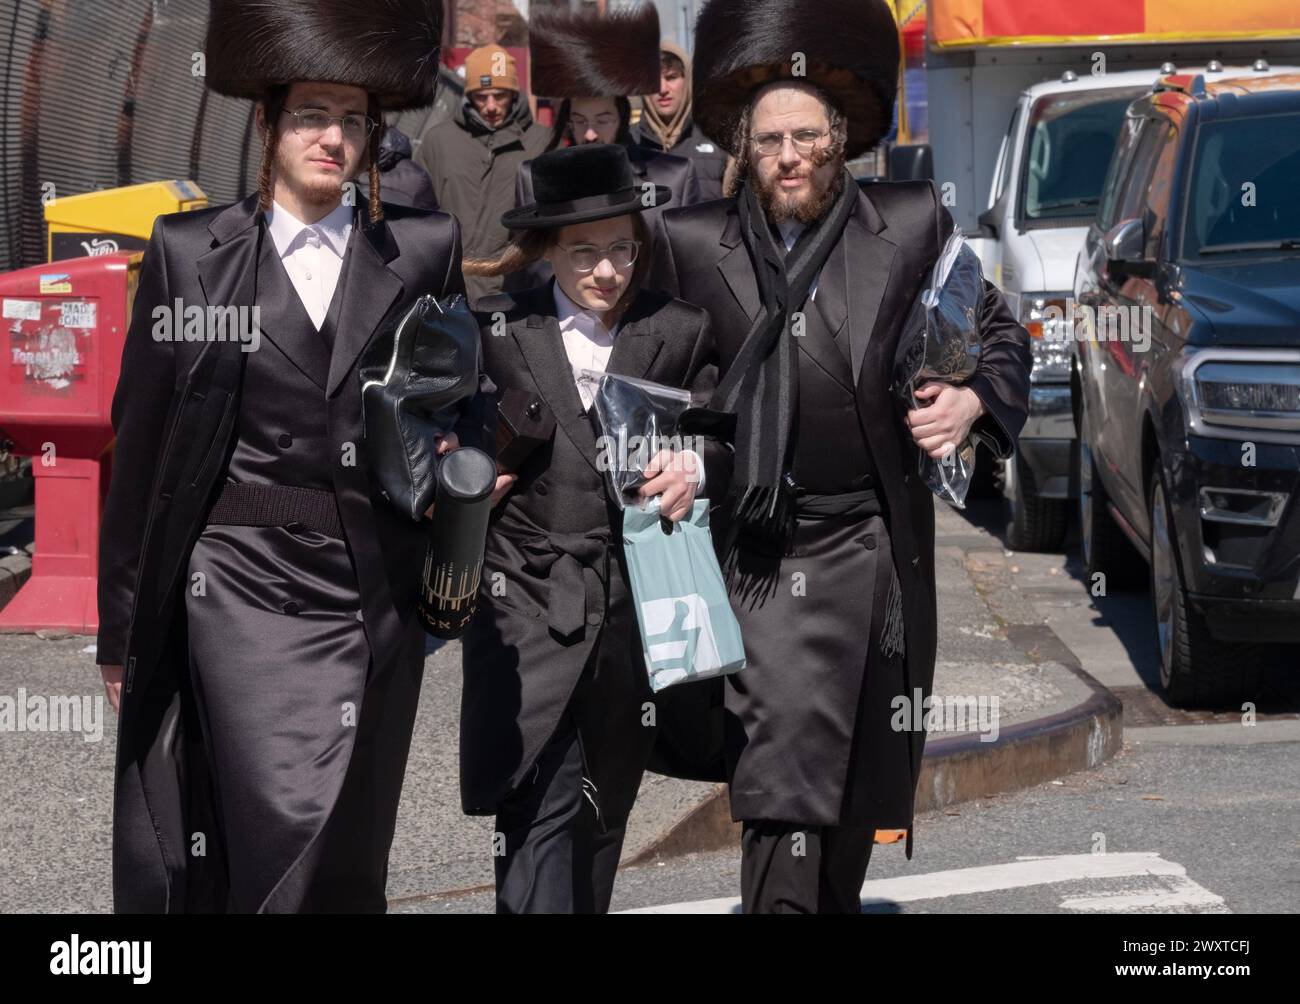 Uomini chassidici, alcuni indossano cappelli in pelliccia di shtreimel. Ritorno dai servizi mattutini di Purim vestiti con il meglio delle loro vacanze. A Brooklyn, New York. Forse la famiglia. Foto Stock